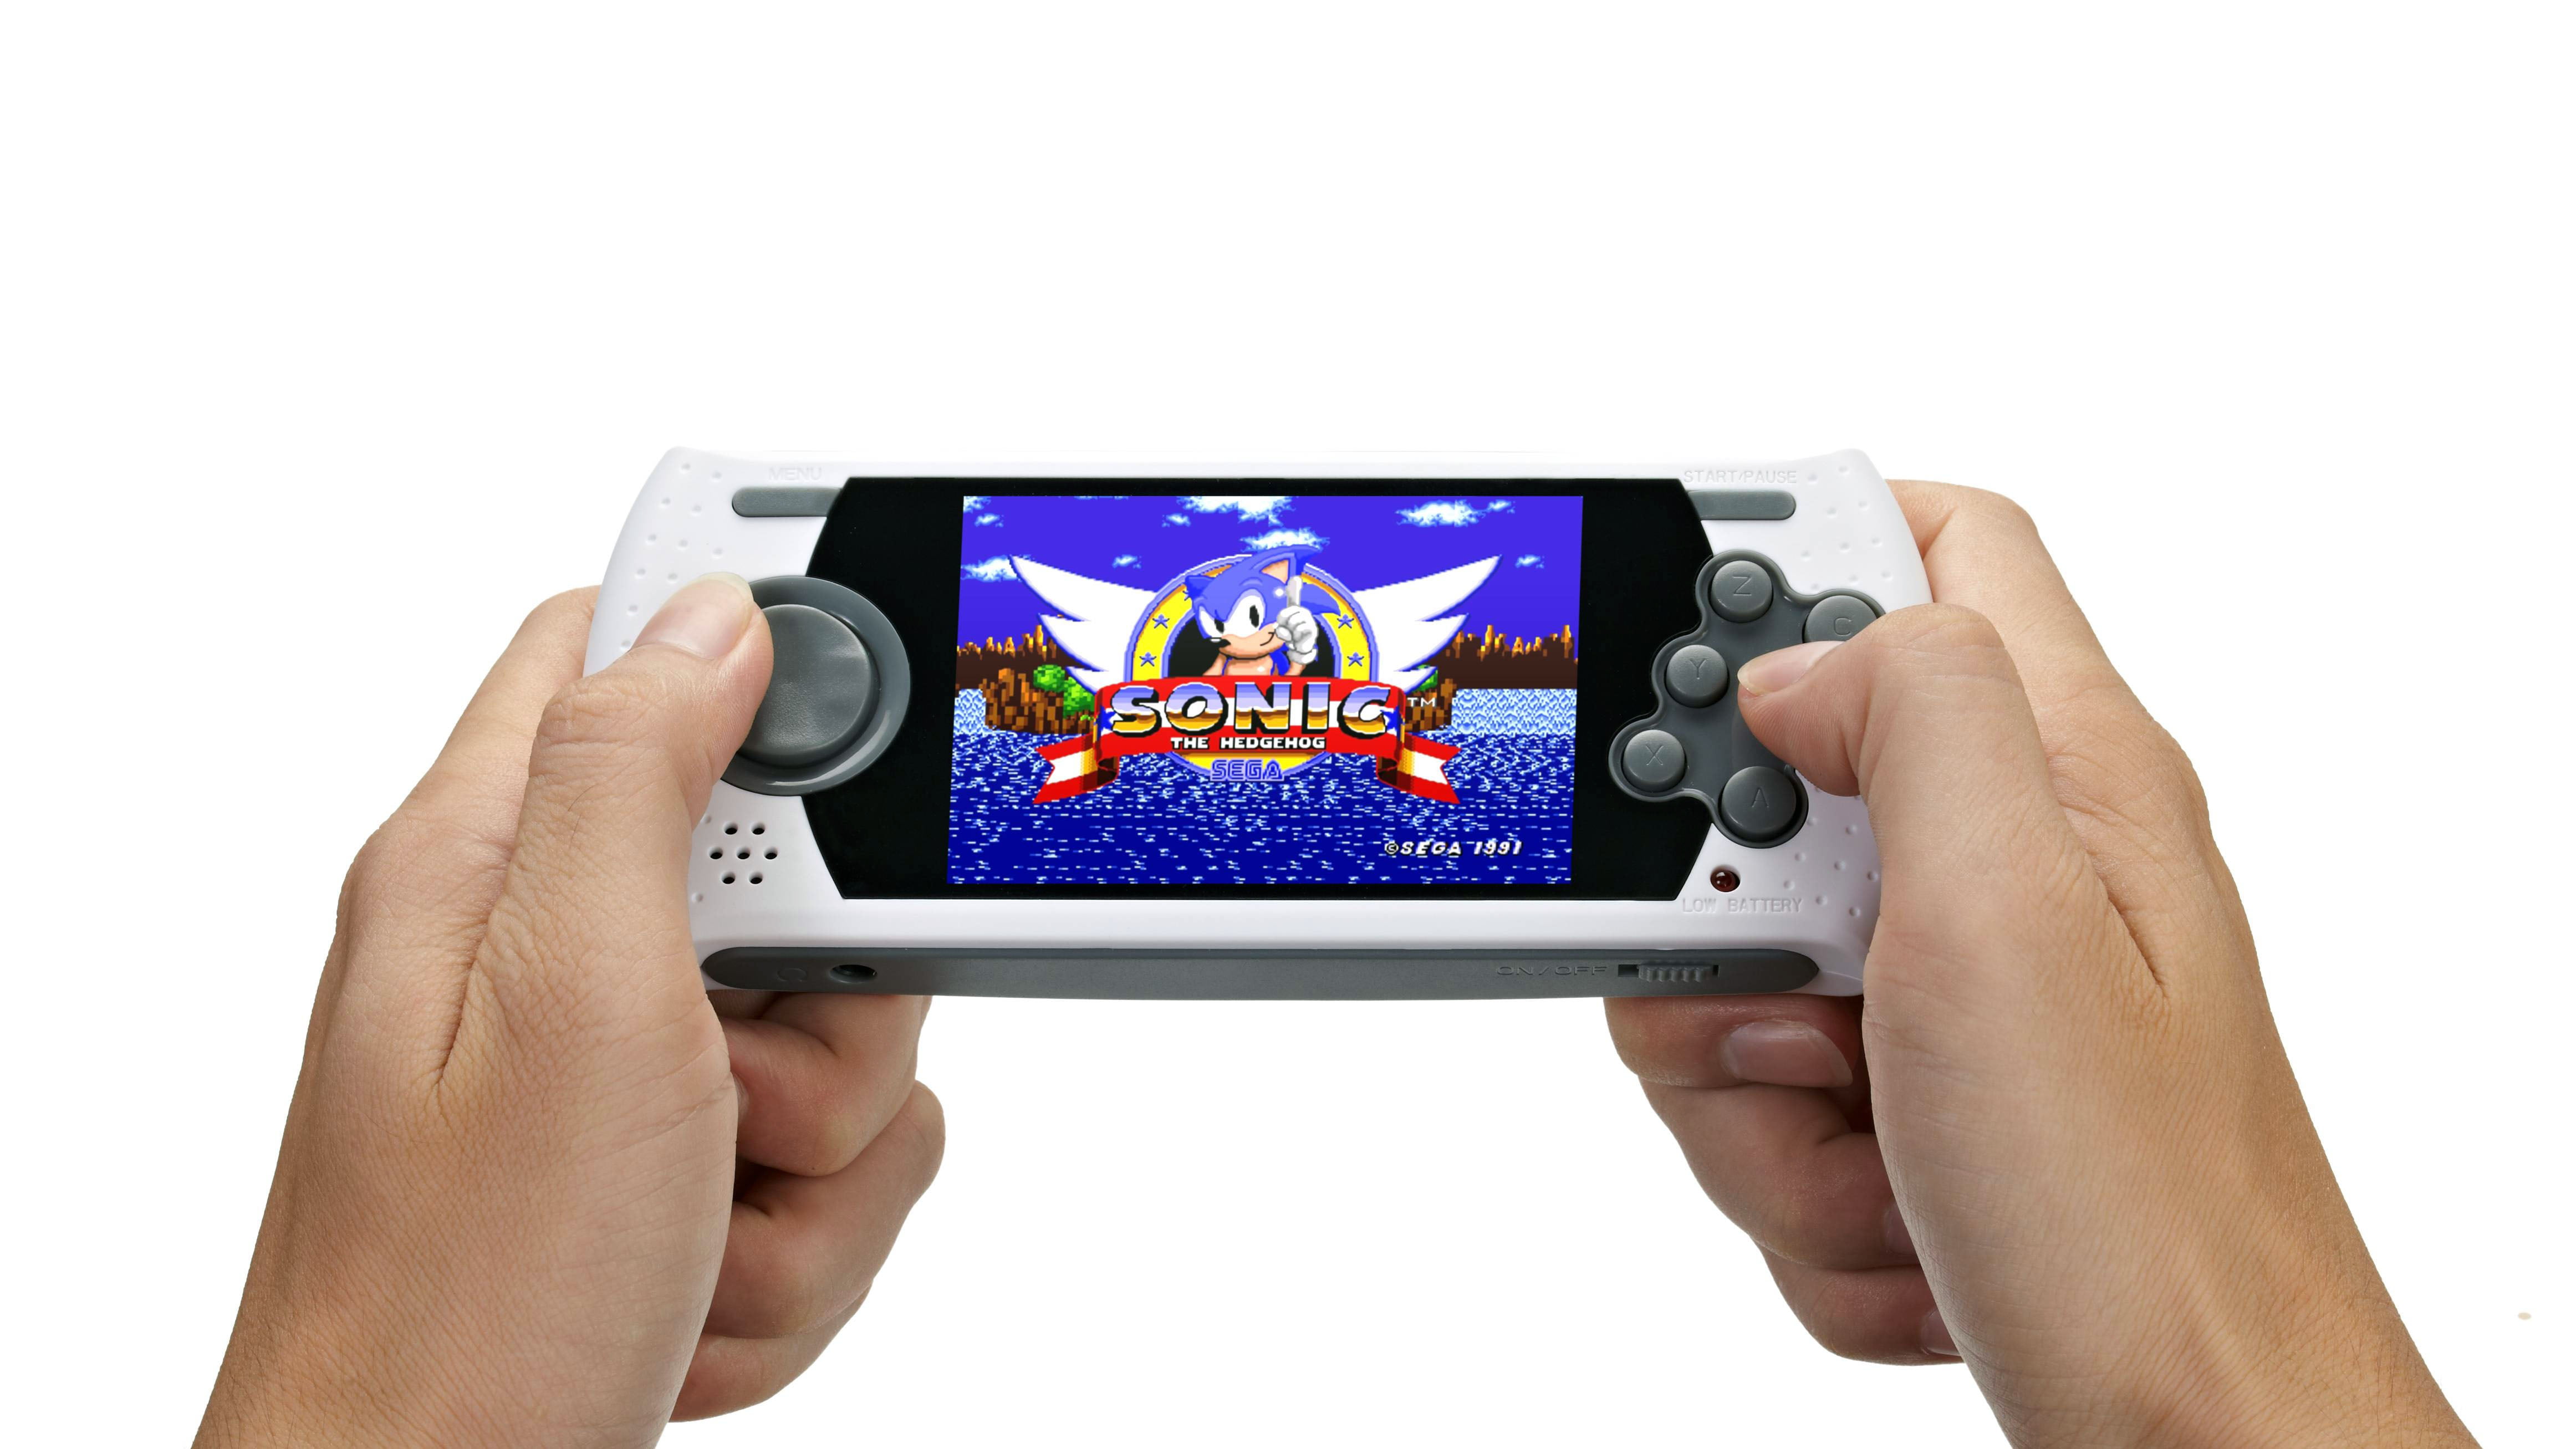 Sega genius ultimate portable handheld